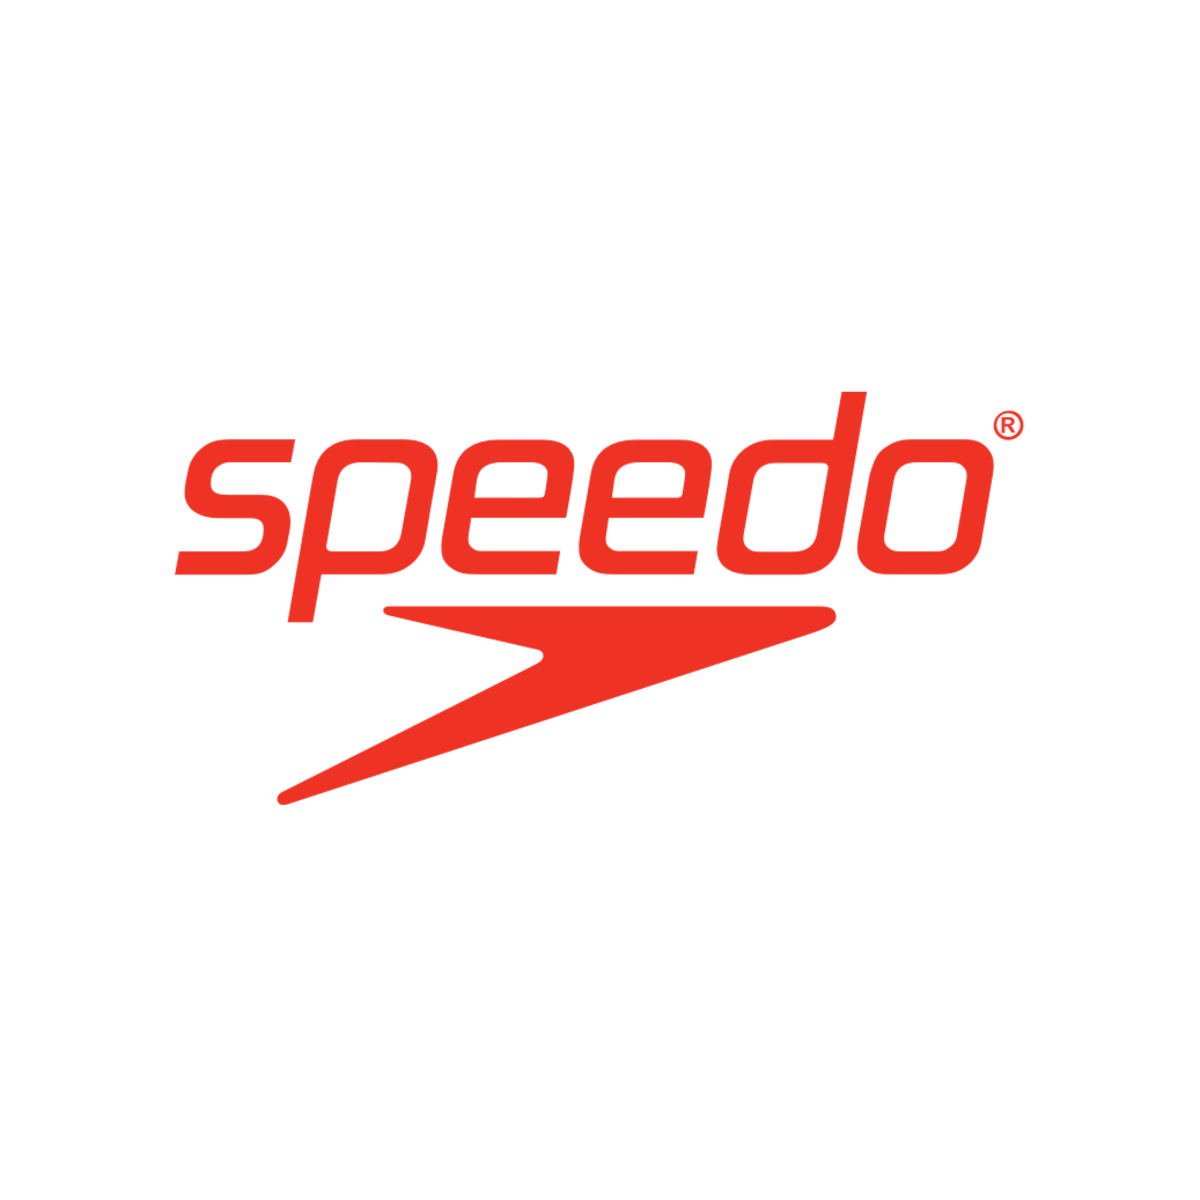 www.speedo.com